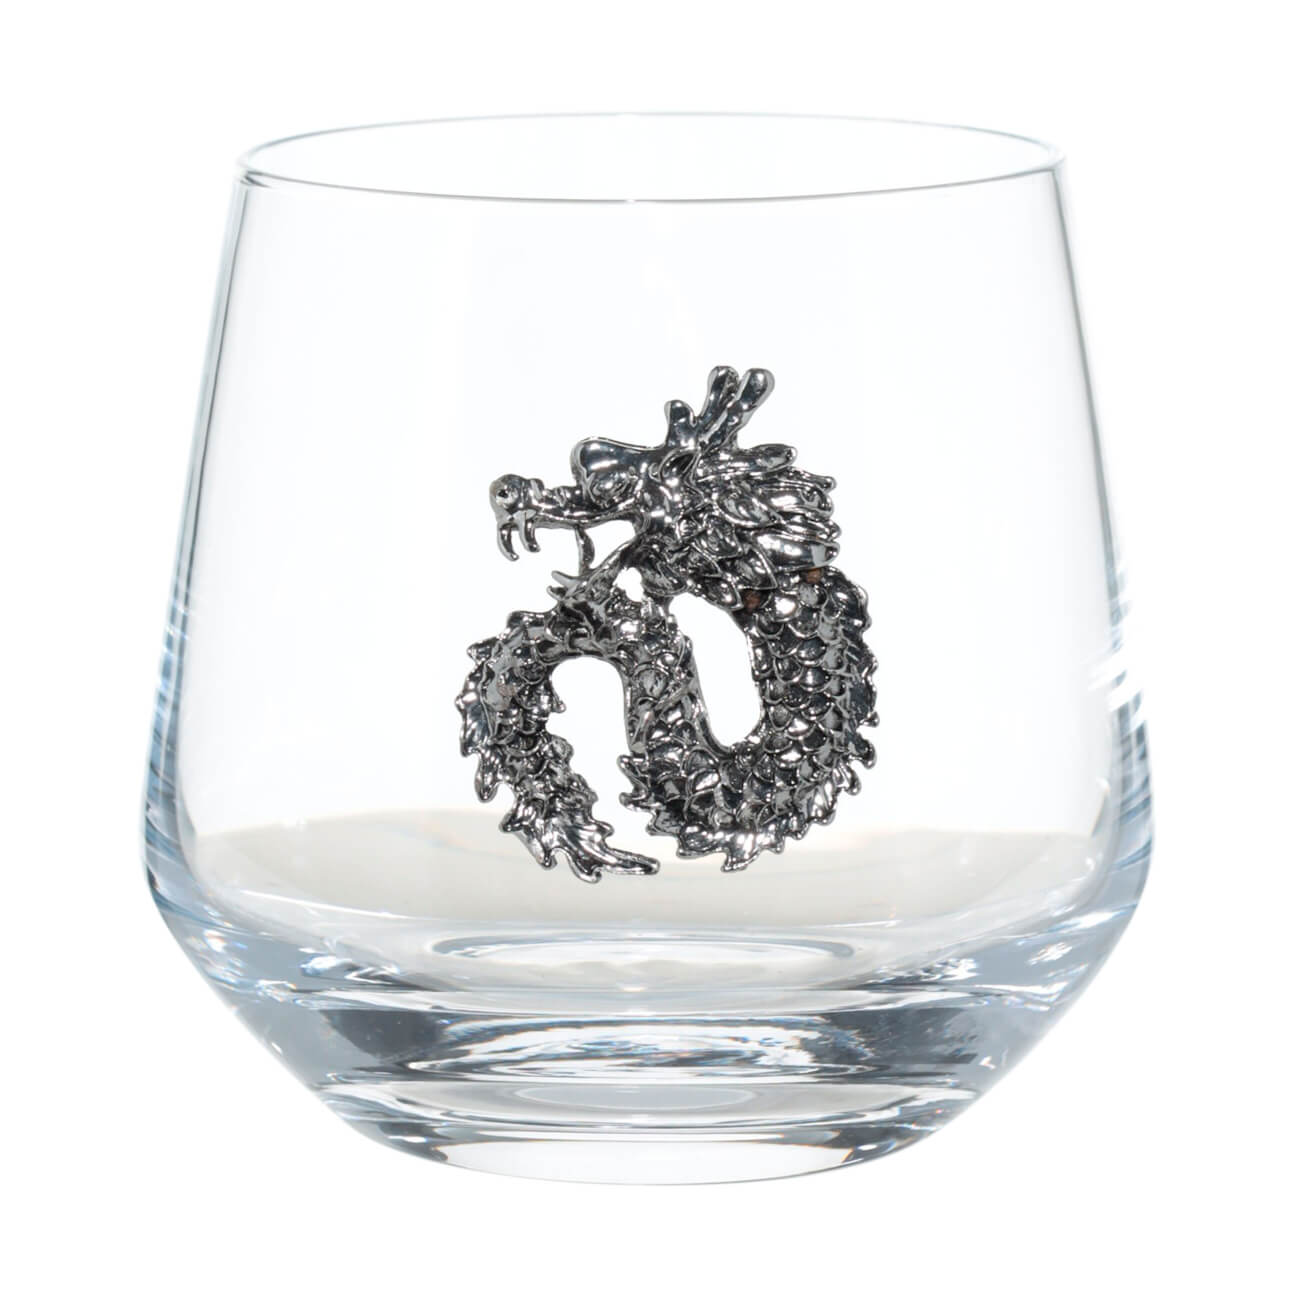 Стакан для виски, 9,5 см, 370 мл, стекло/металл, Серебристый дракон, Lux elements elements бокалы для виски 2 шт